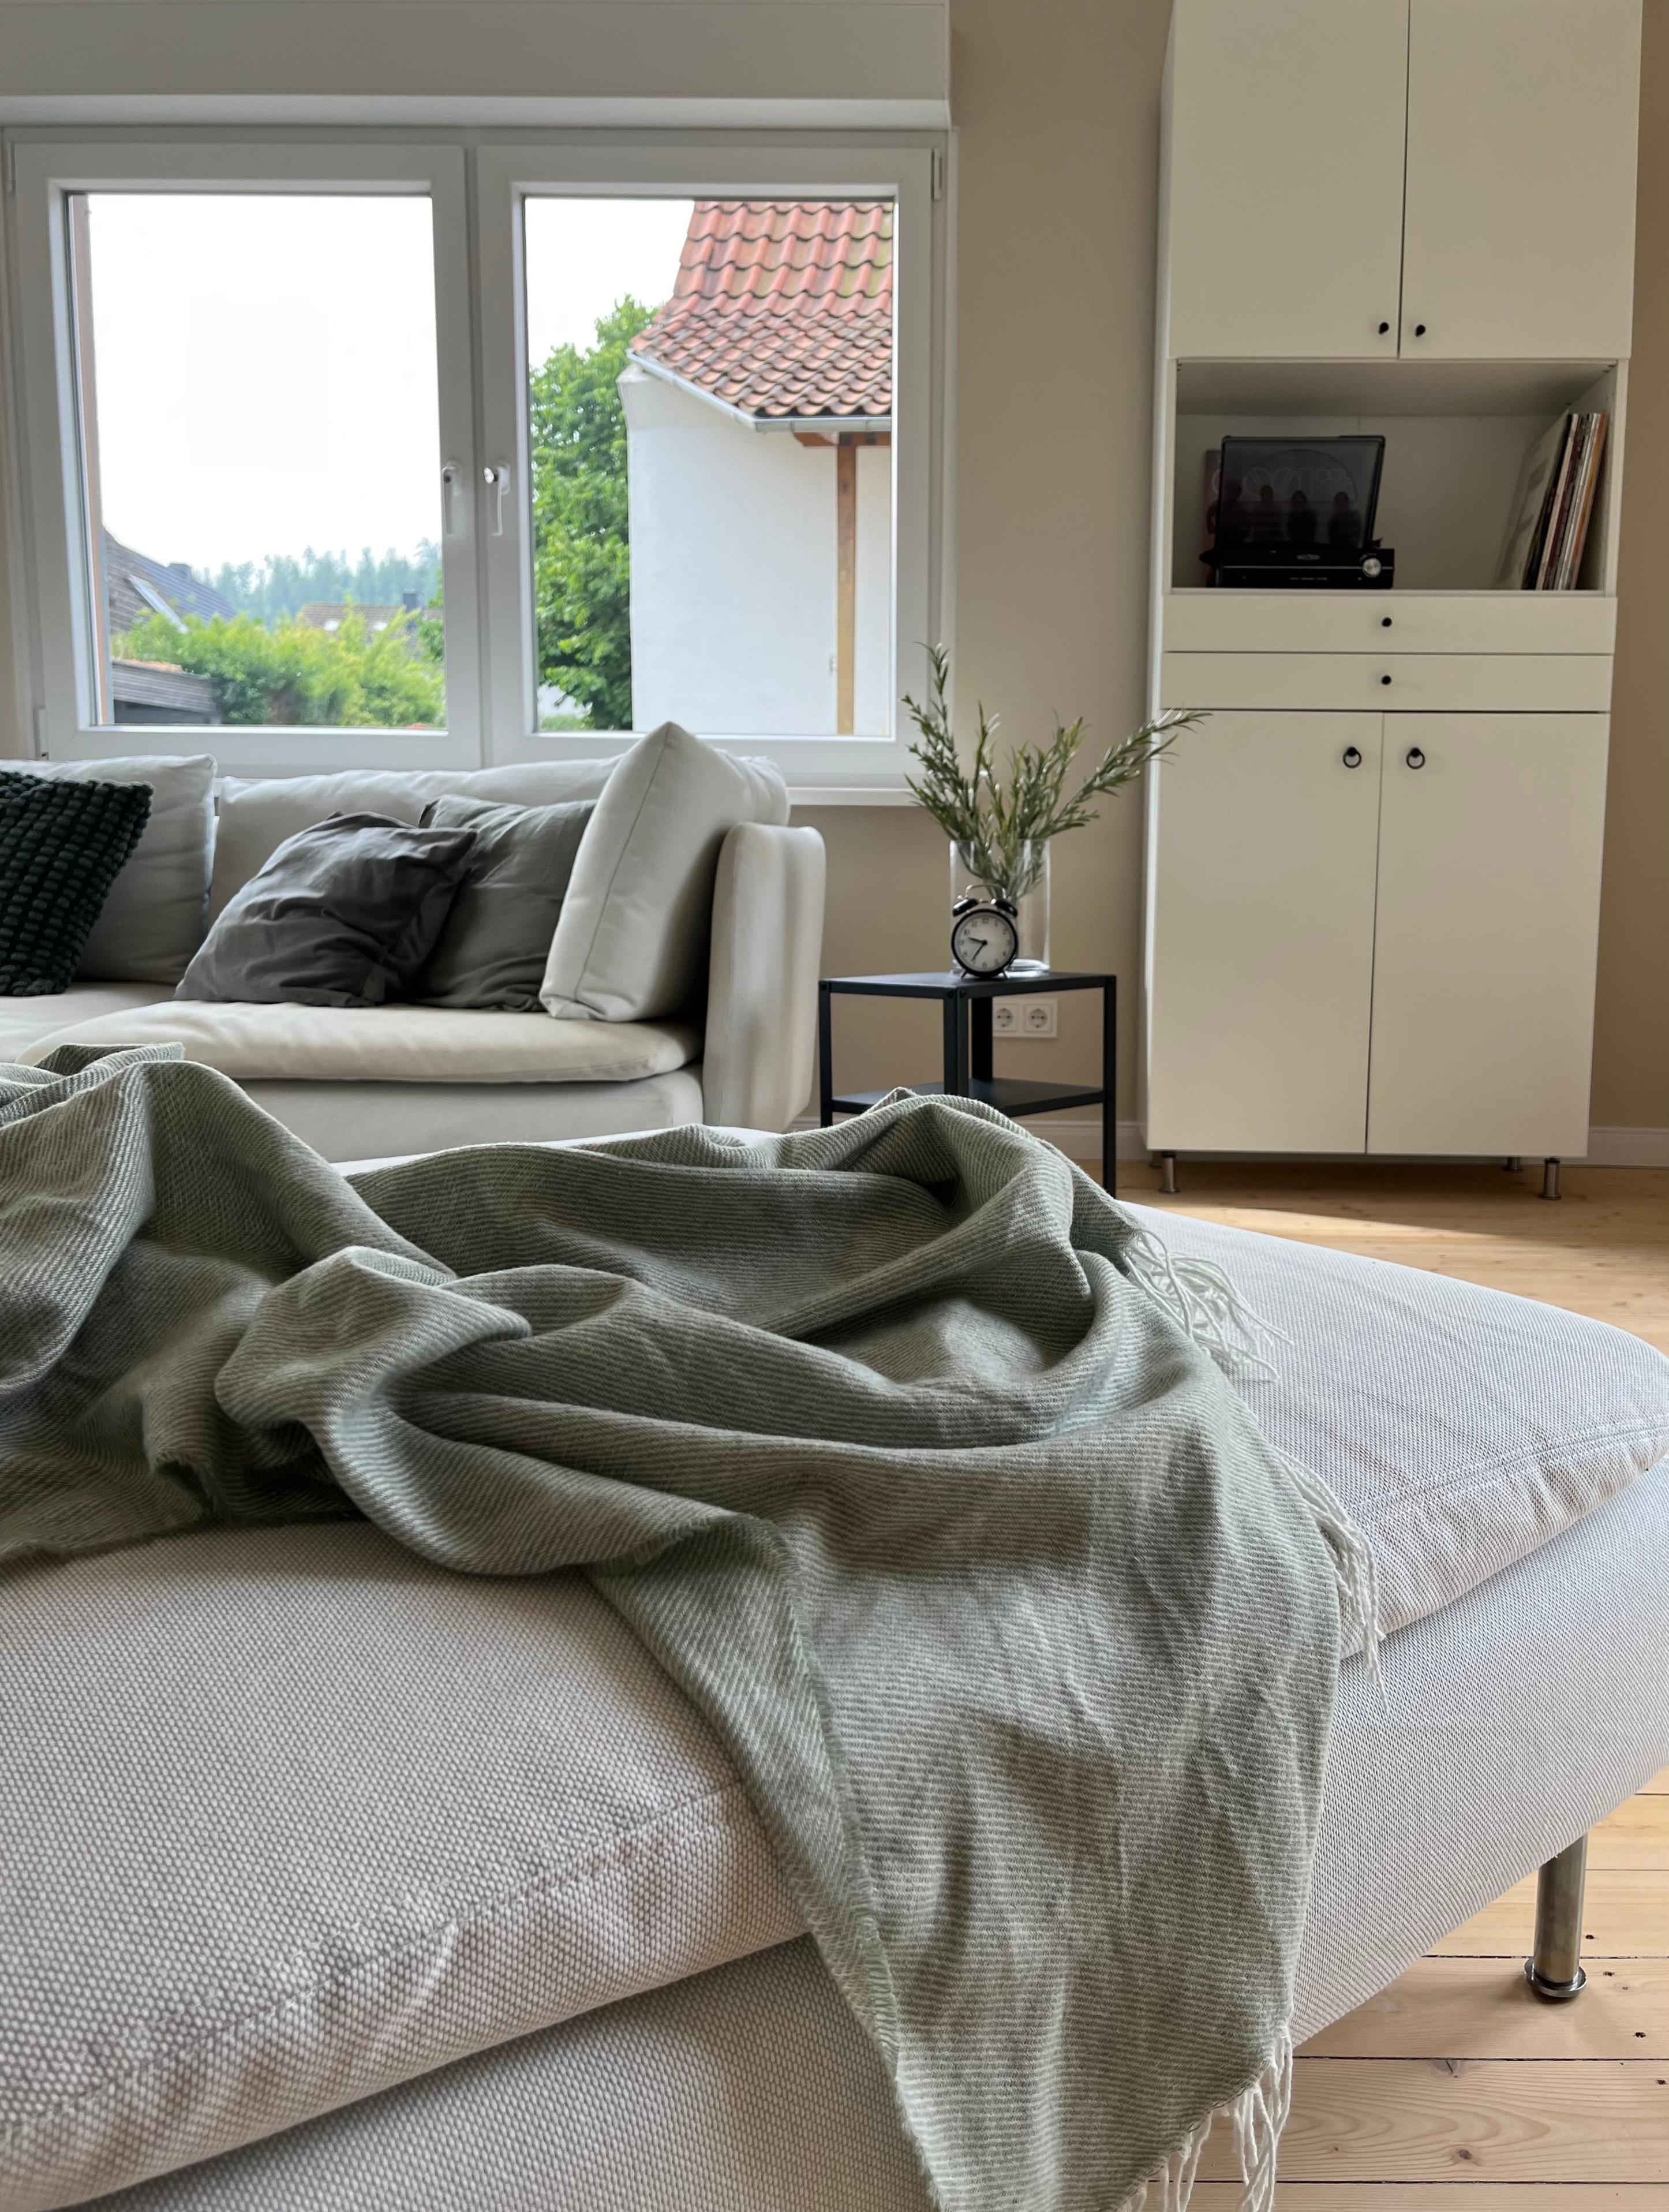 #details📸

#wohnzimmer #livingroom#söderhamn #metod #schallplatten 